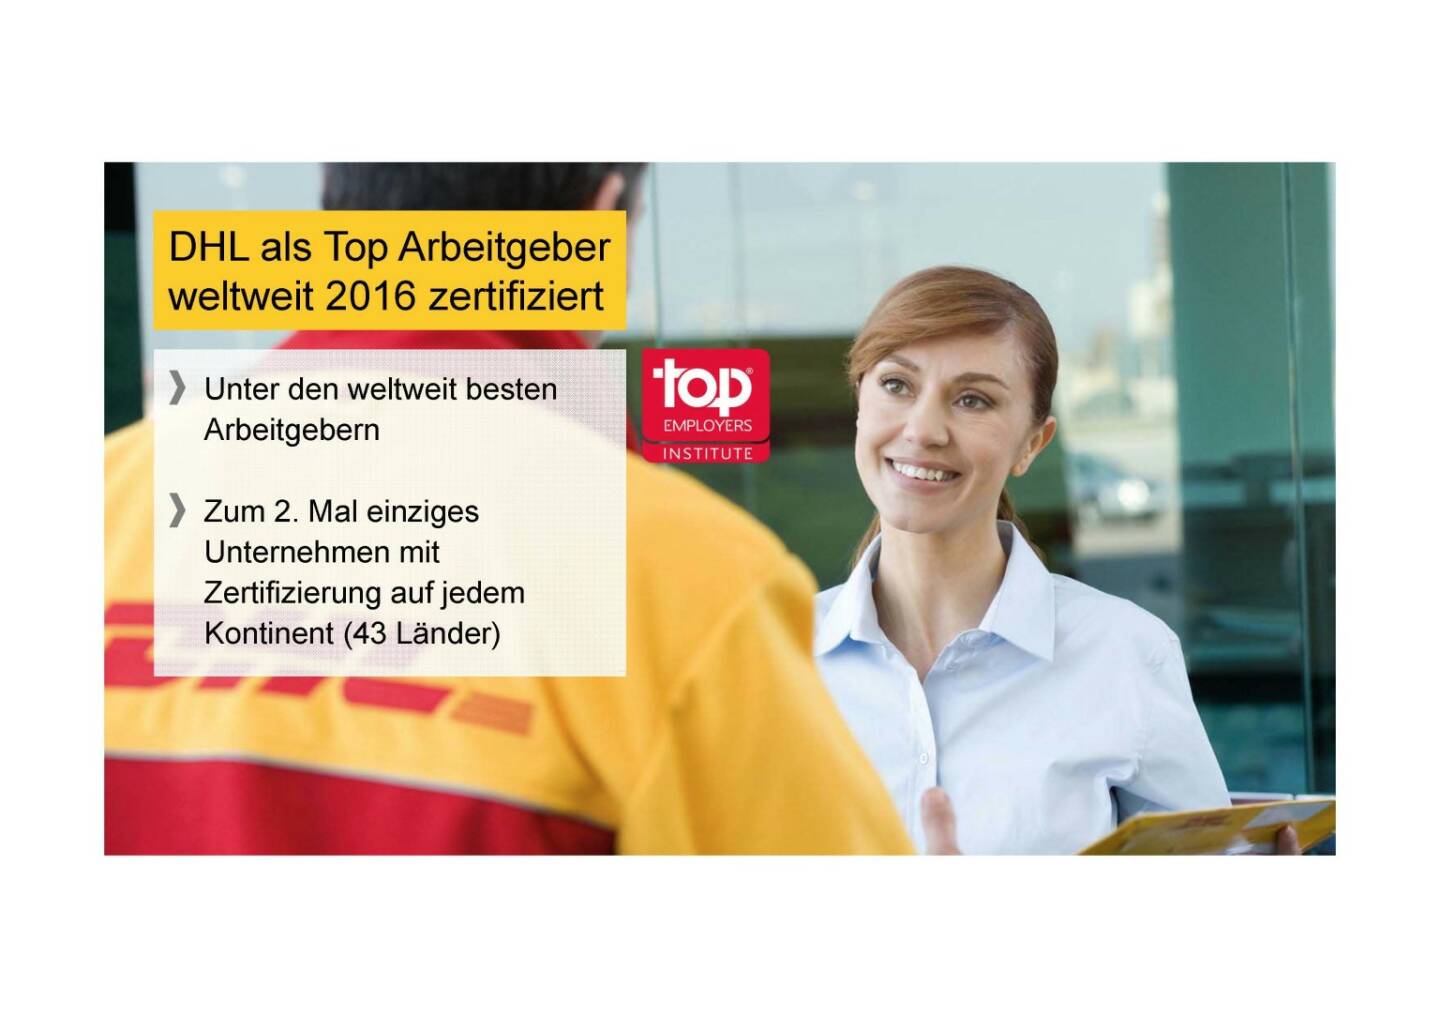 Deutsche Post - DHL als Top Arbeitgeber